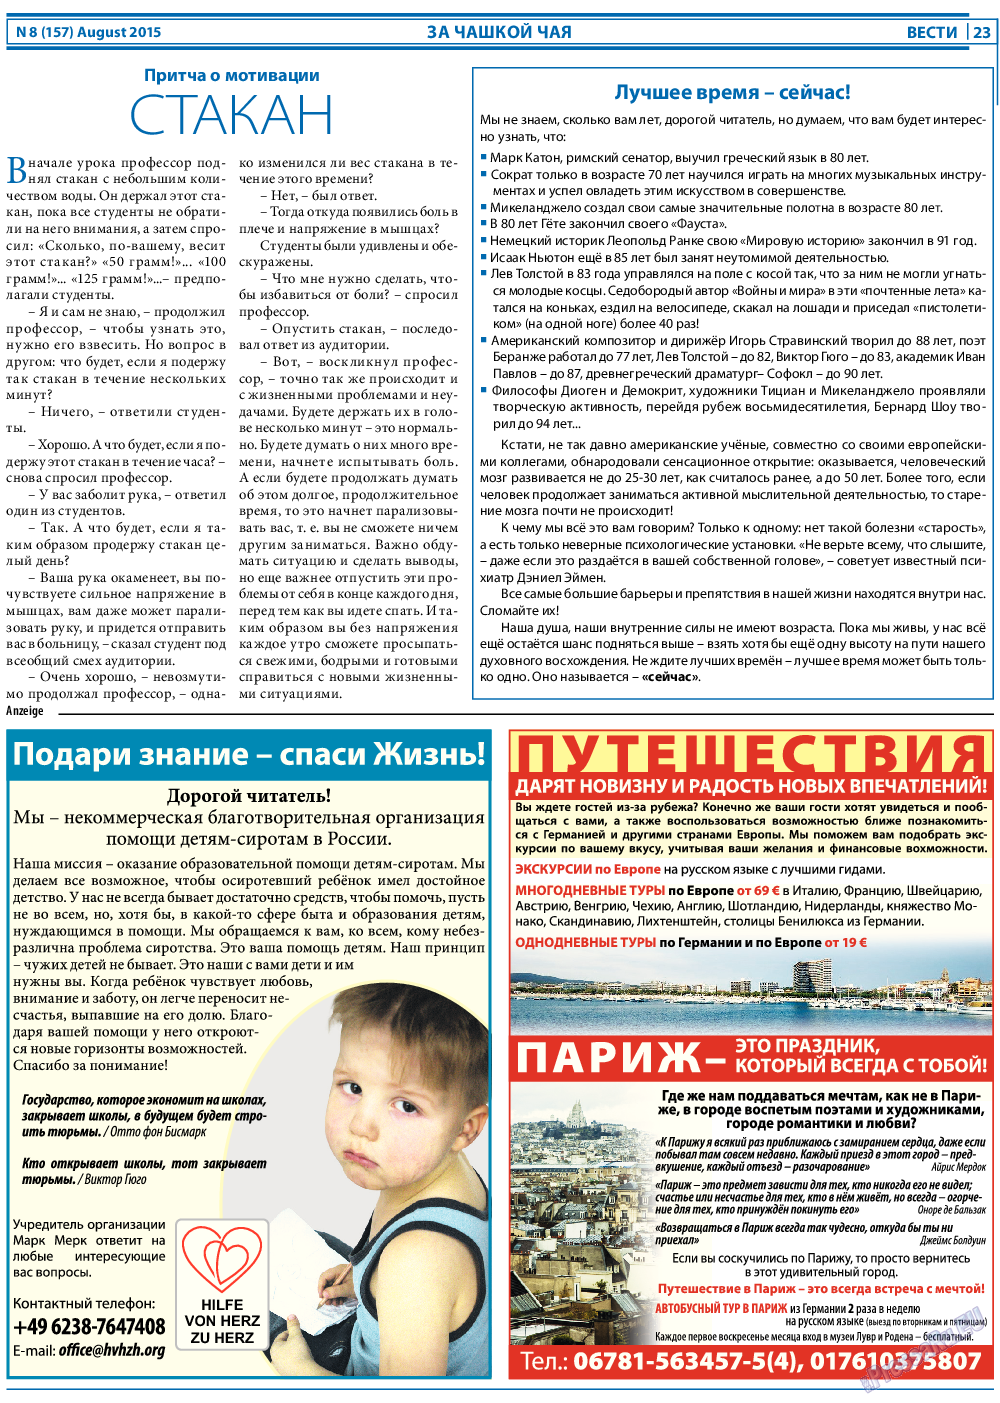 Вести, газета. 2015 №8 стр.23